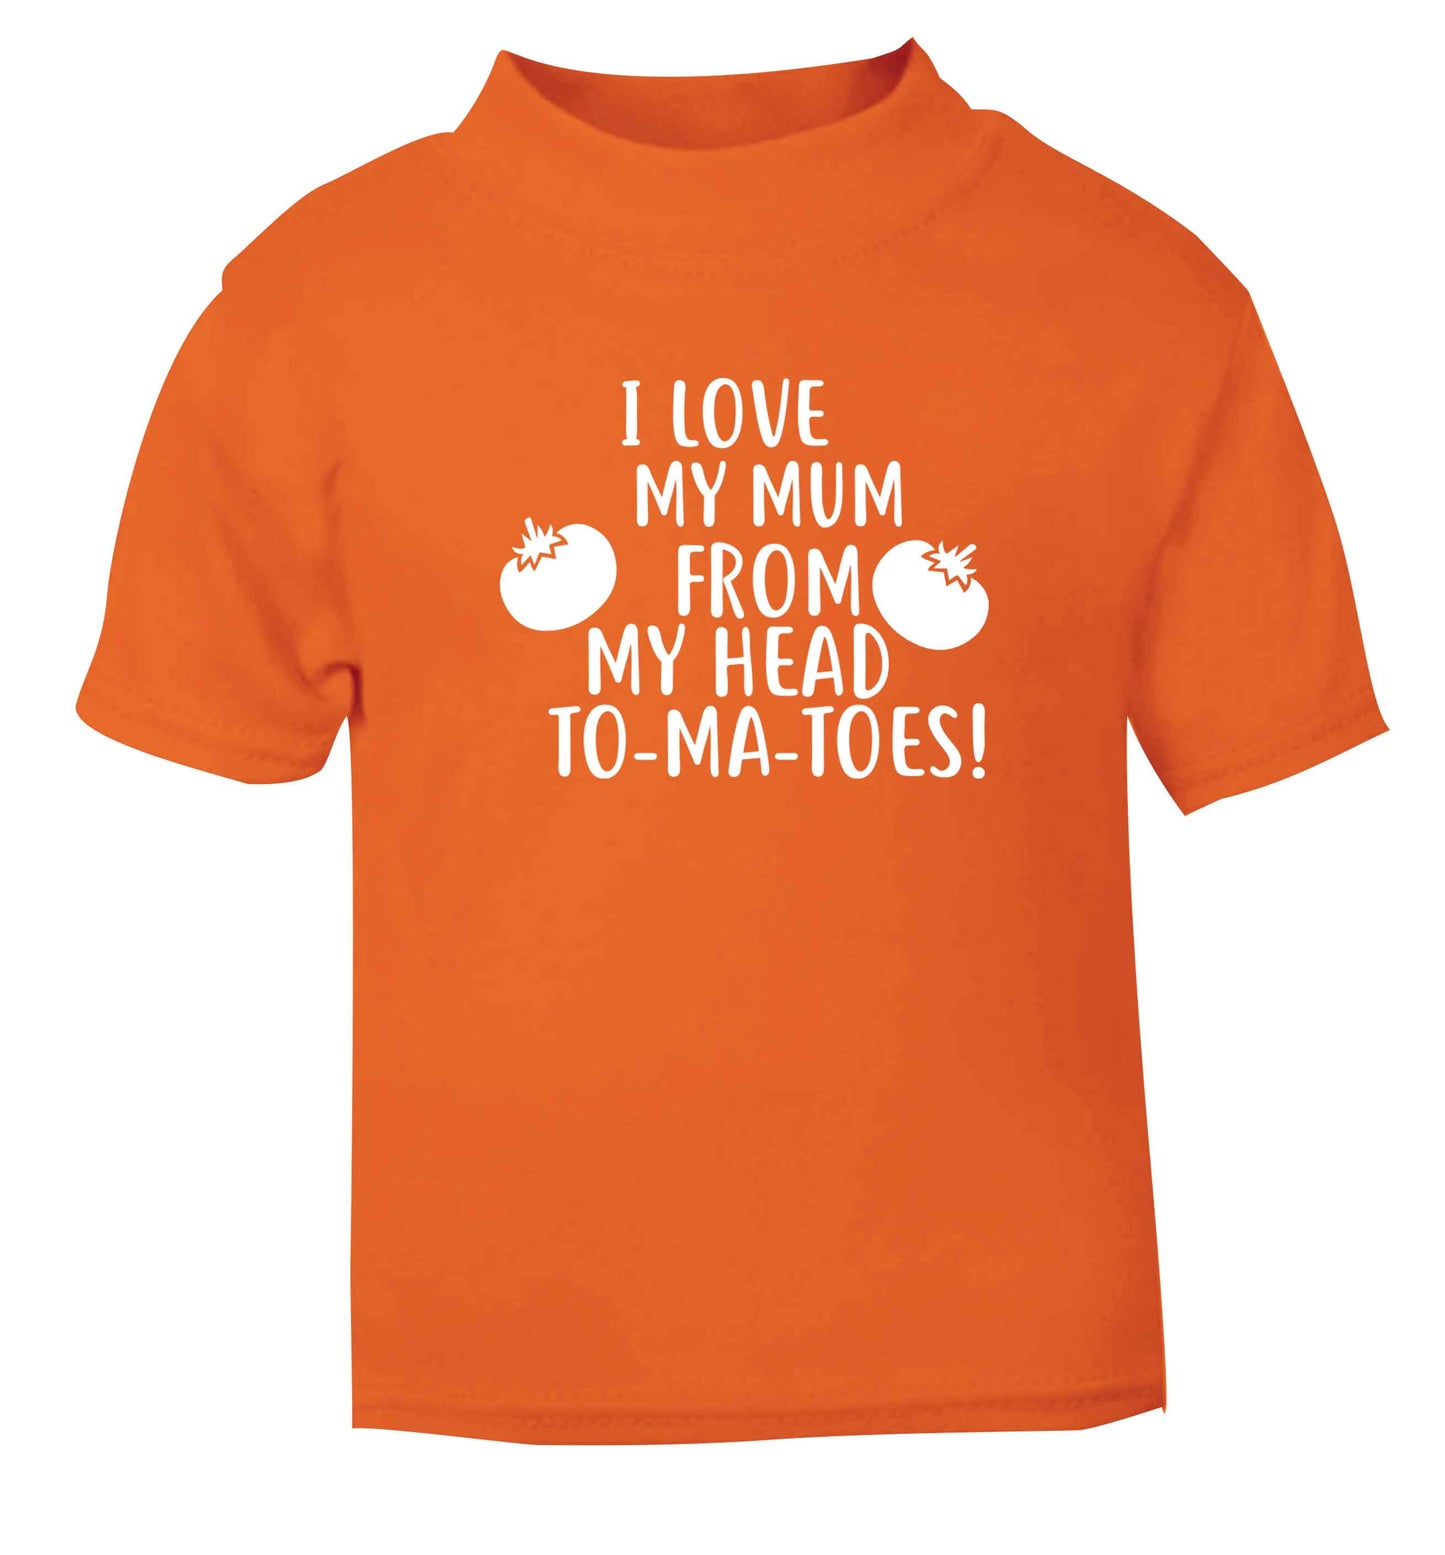 I love my mum from my head to-my-toes! orange baby toddler Tshirt 2 Years